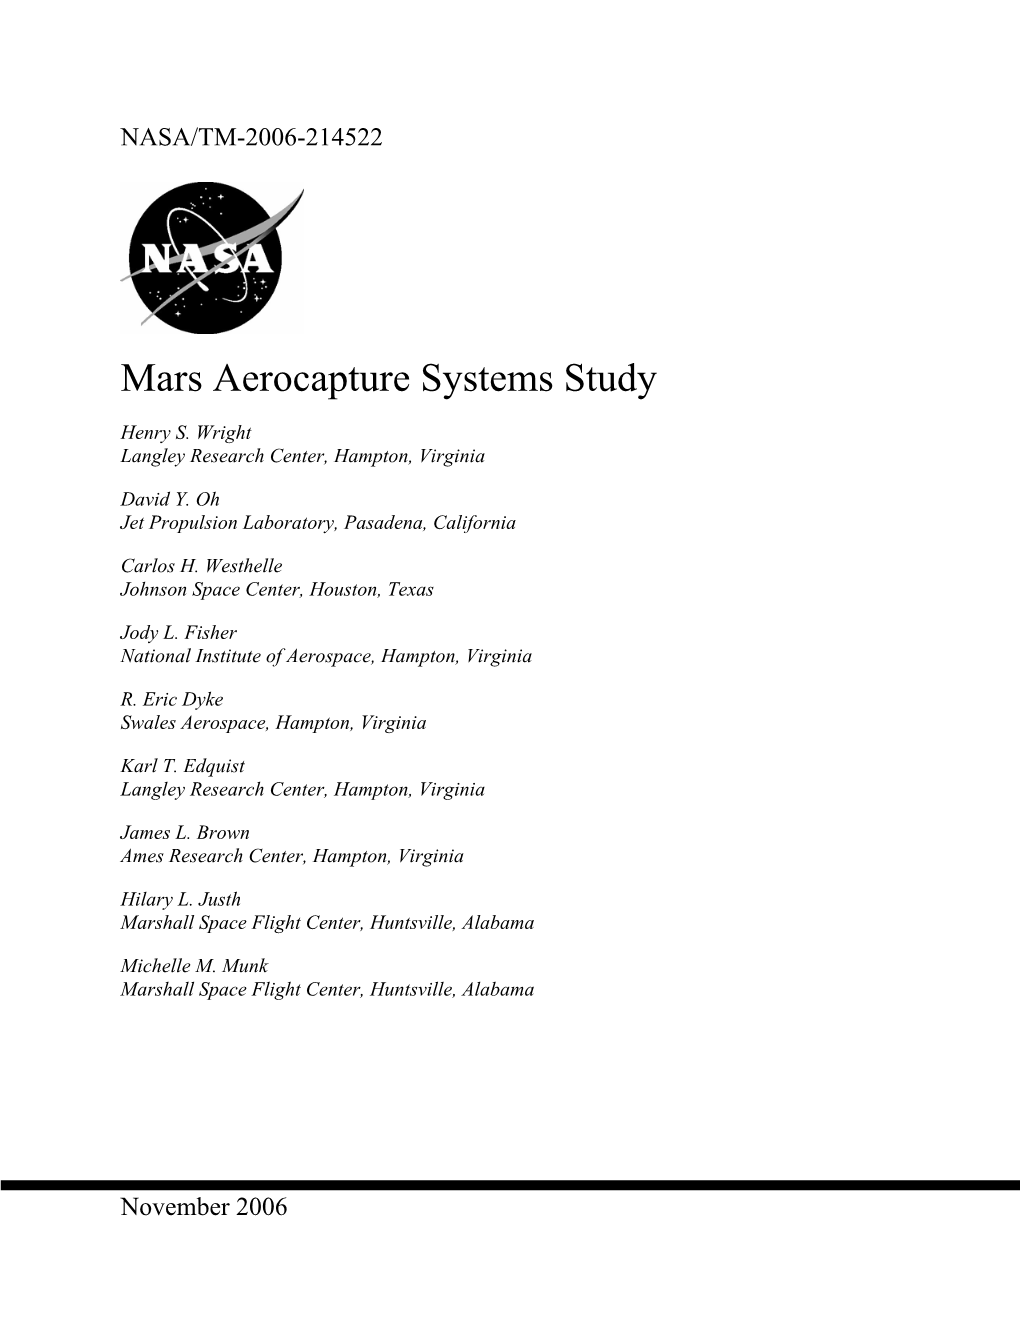 Mars Aerocapture Systems Study